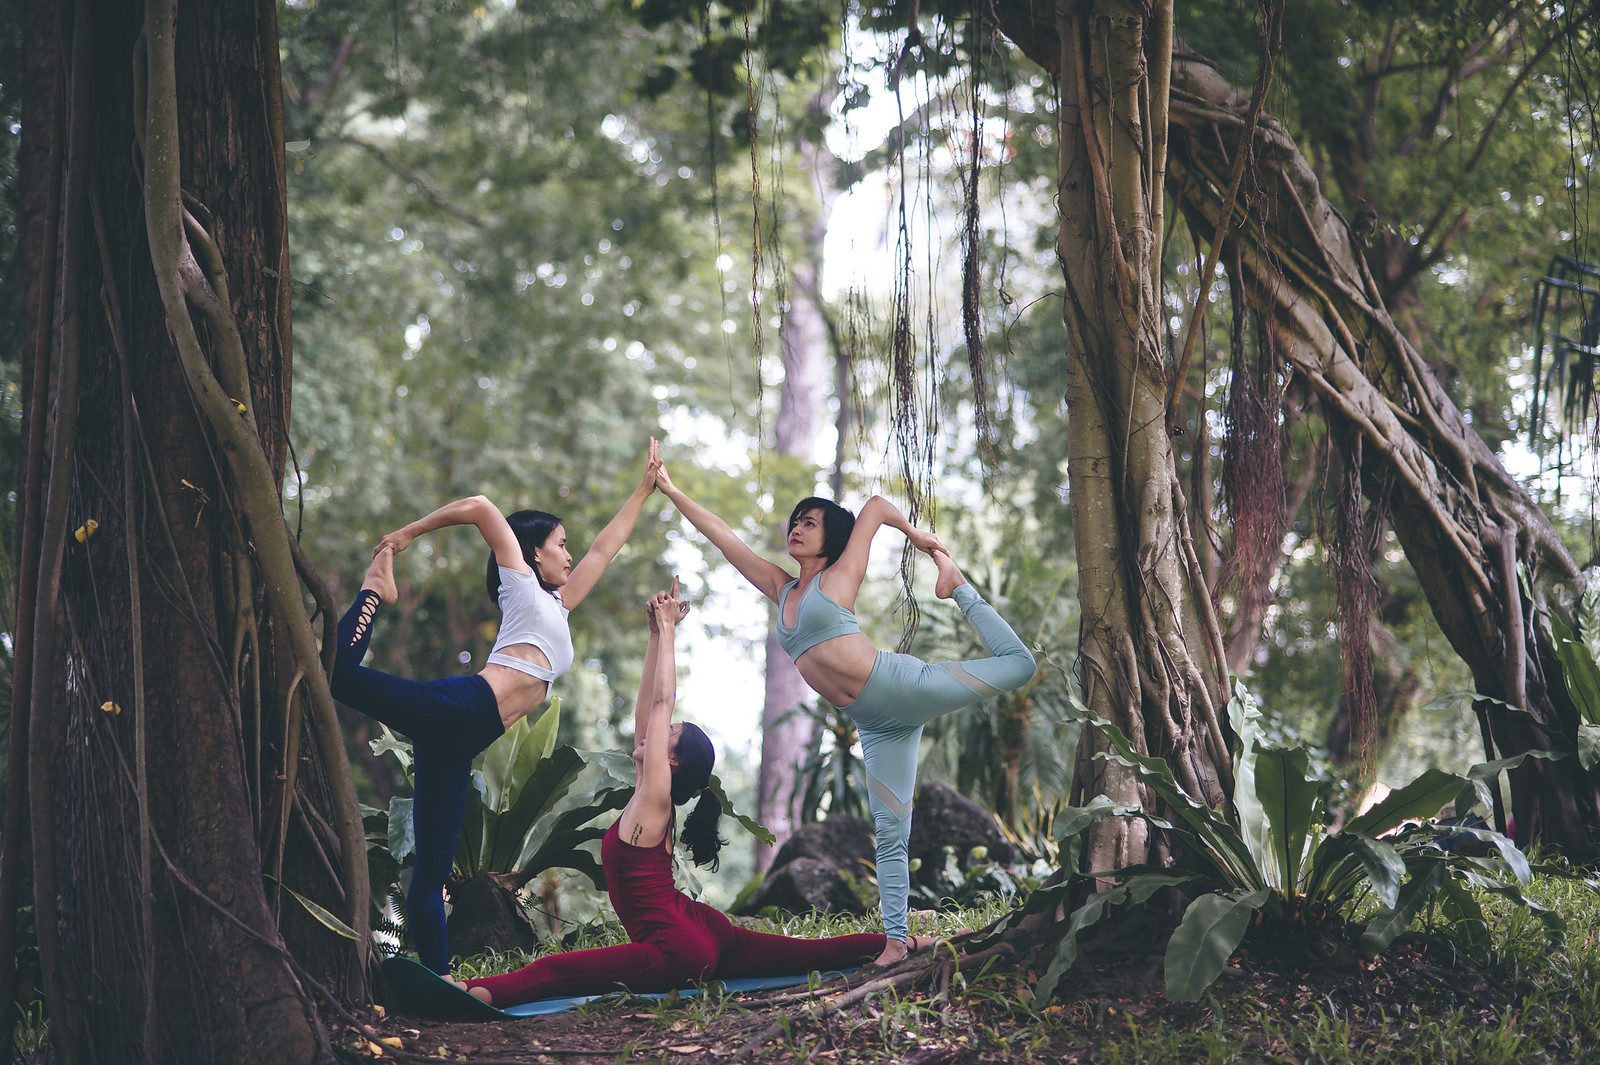 41466324960 0436ca365f h - Bộ ảnh Yoga với 3 thiếu nữ chụp tại công viên Tao đàn